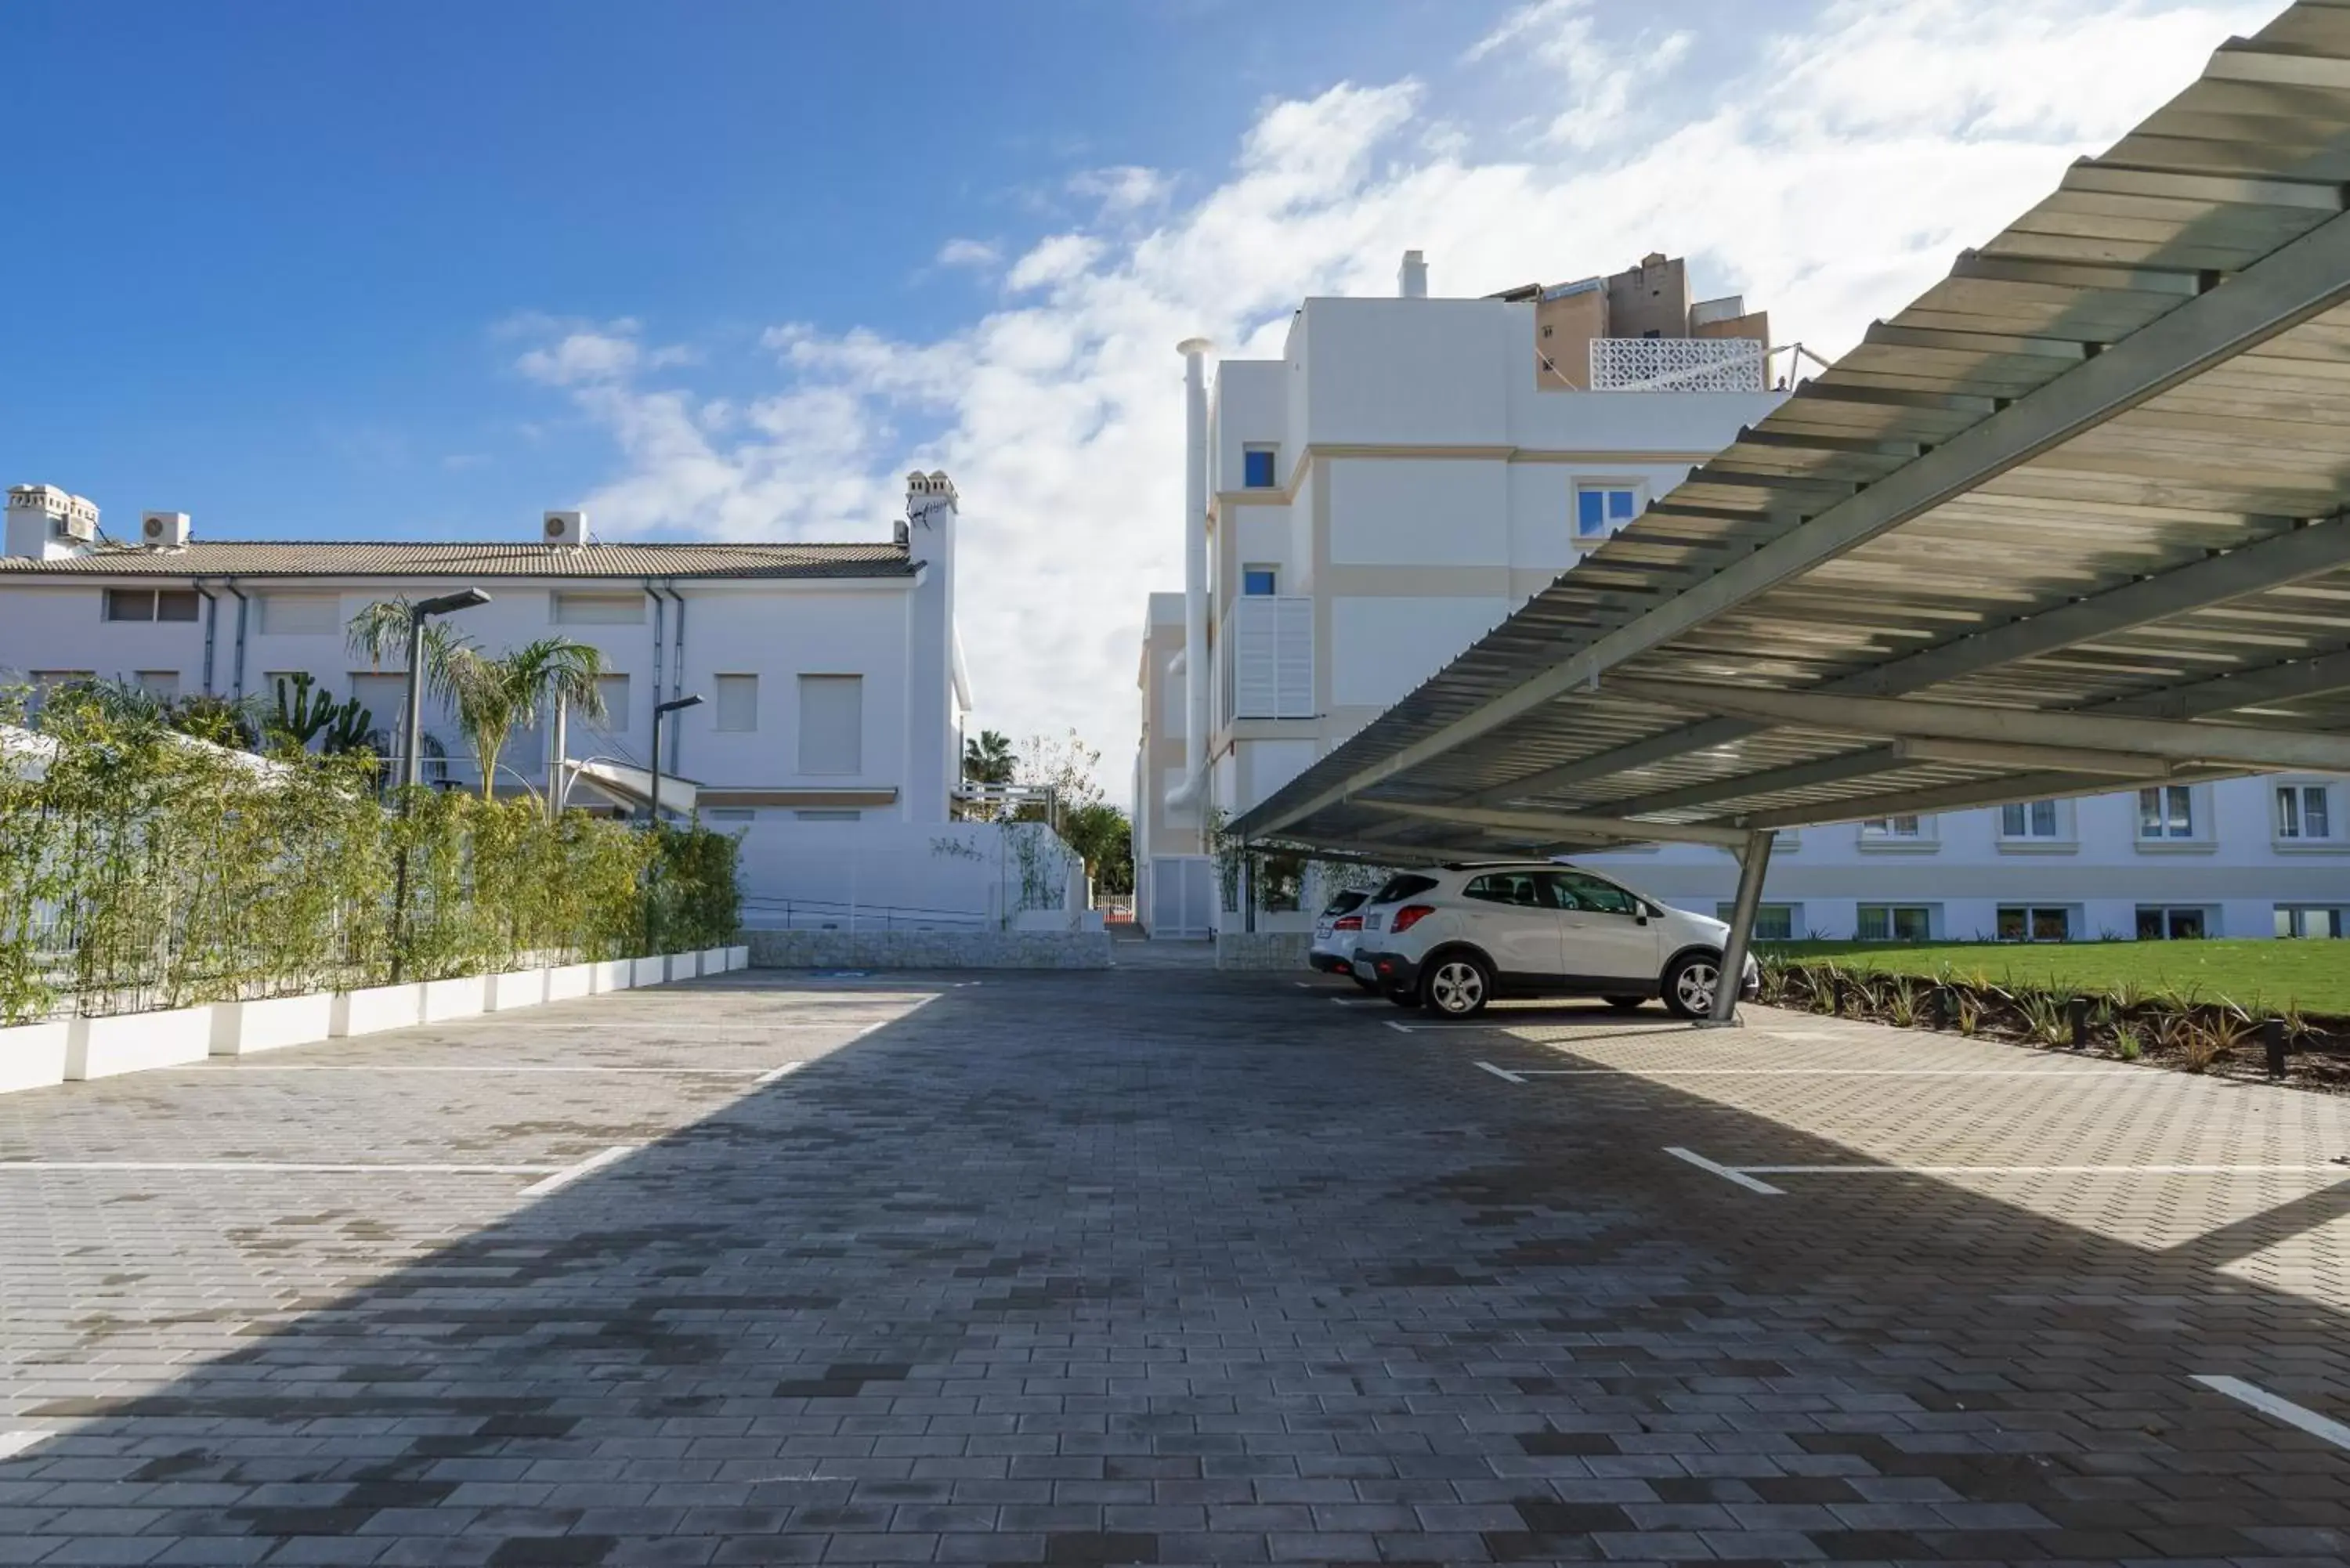 Area and facilities, Property Building in Costa del Sol Torremolinos Hotel